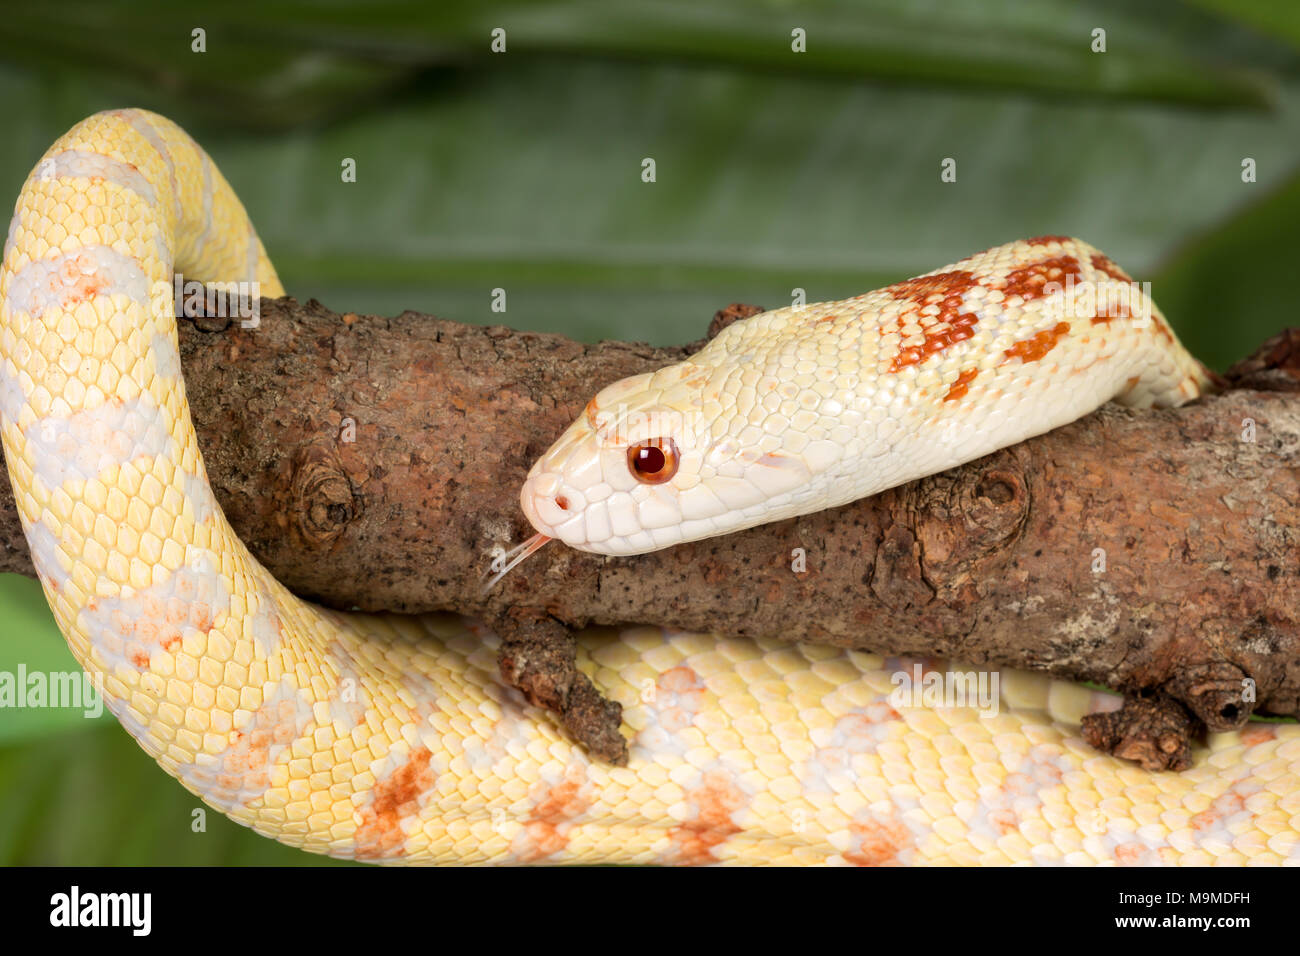 Yellow albino bullsnake curved around a tree branch Stock Photo